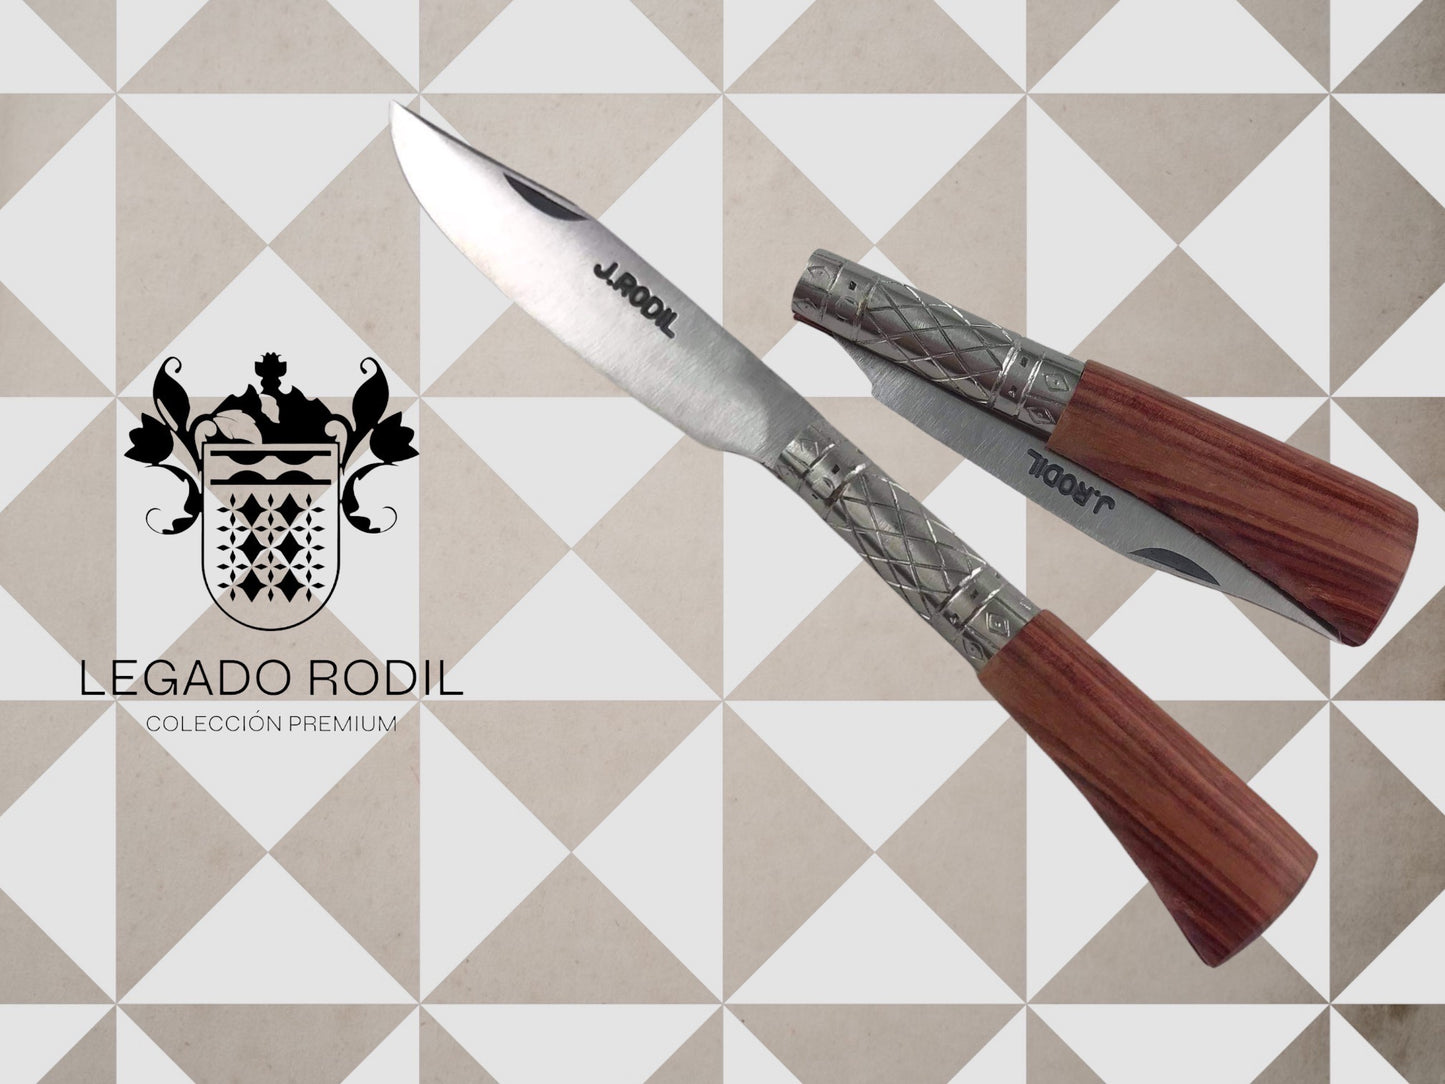 Legado Rodil Model I - Bois véritable - Collection Premium, palissandre, maître artisan José Rodil